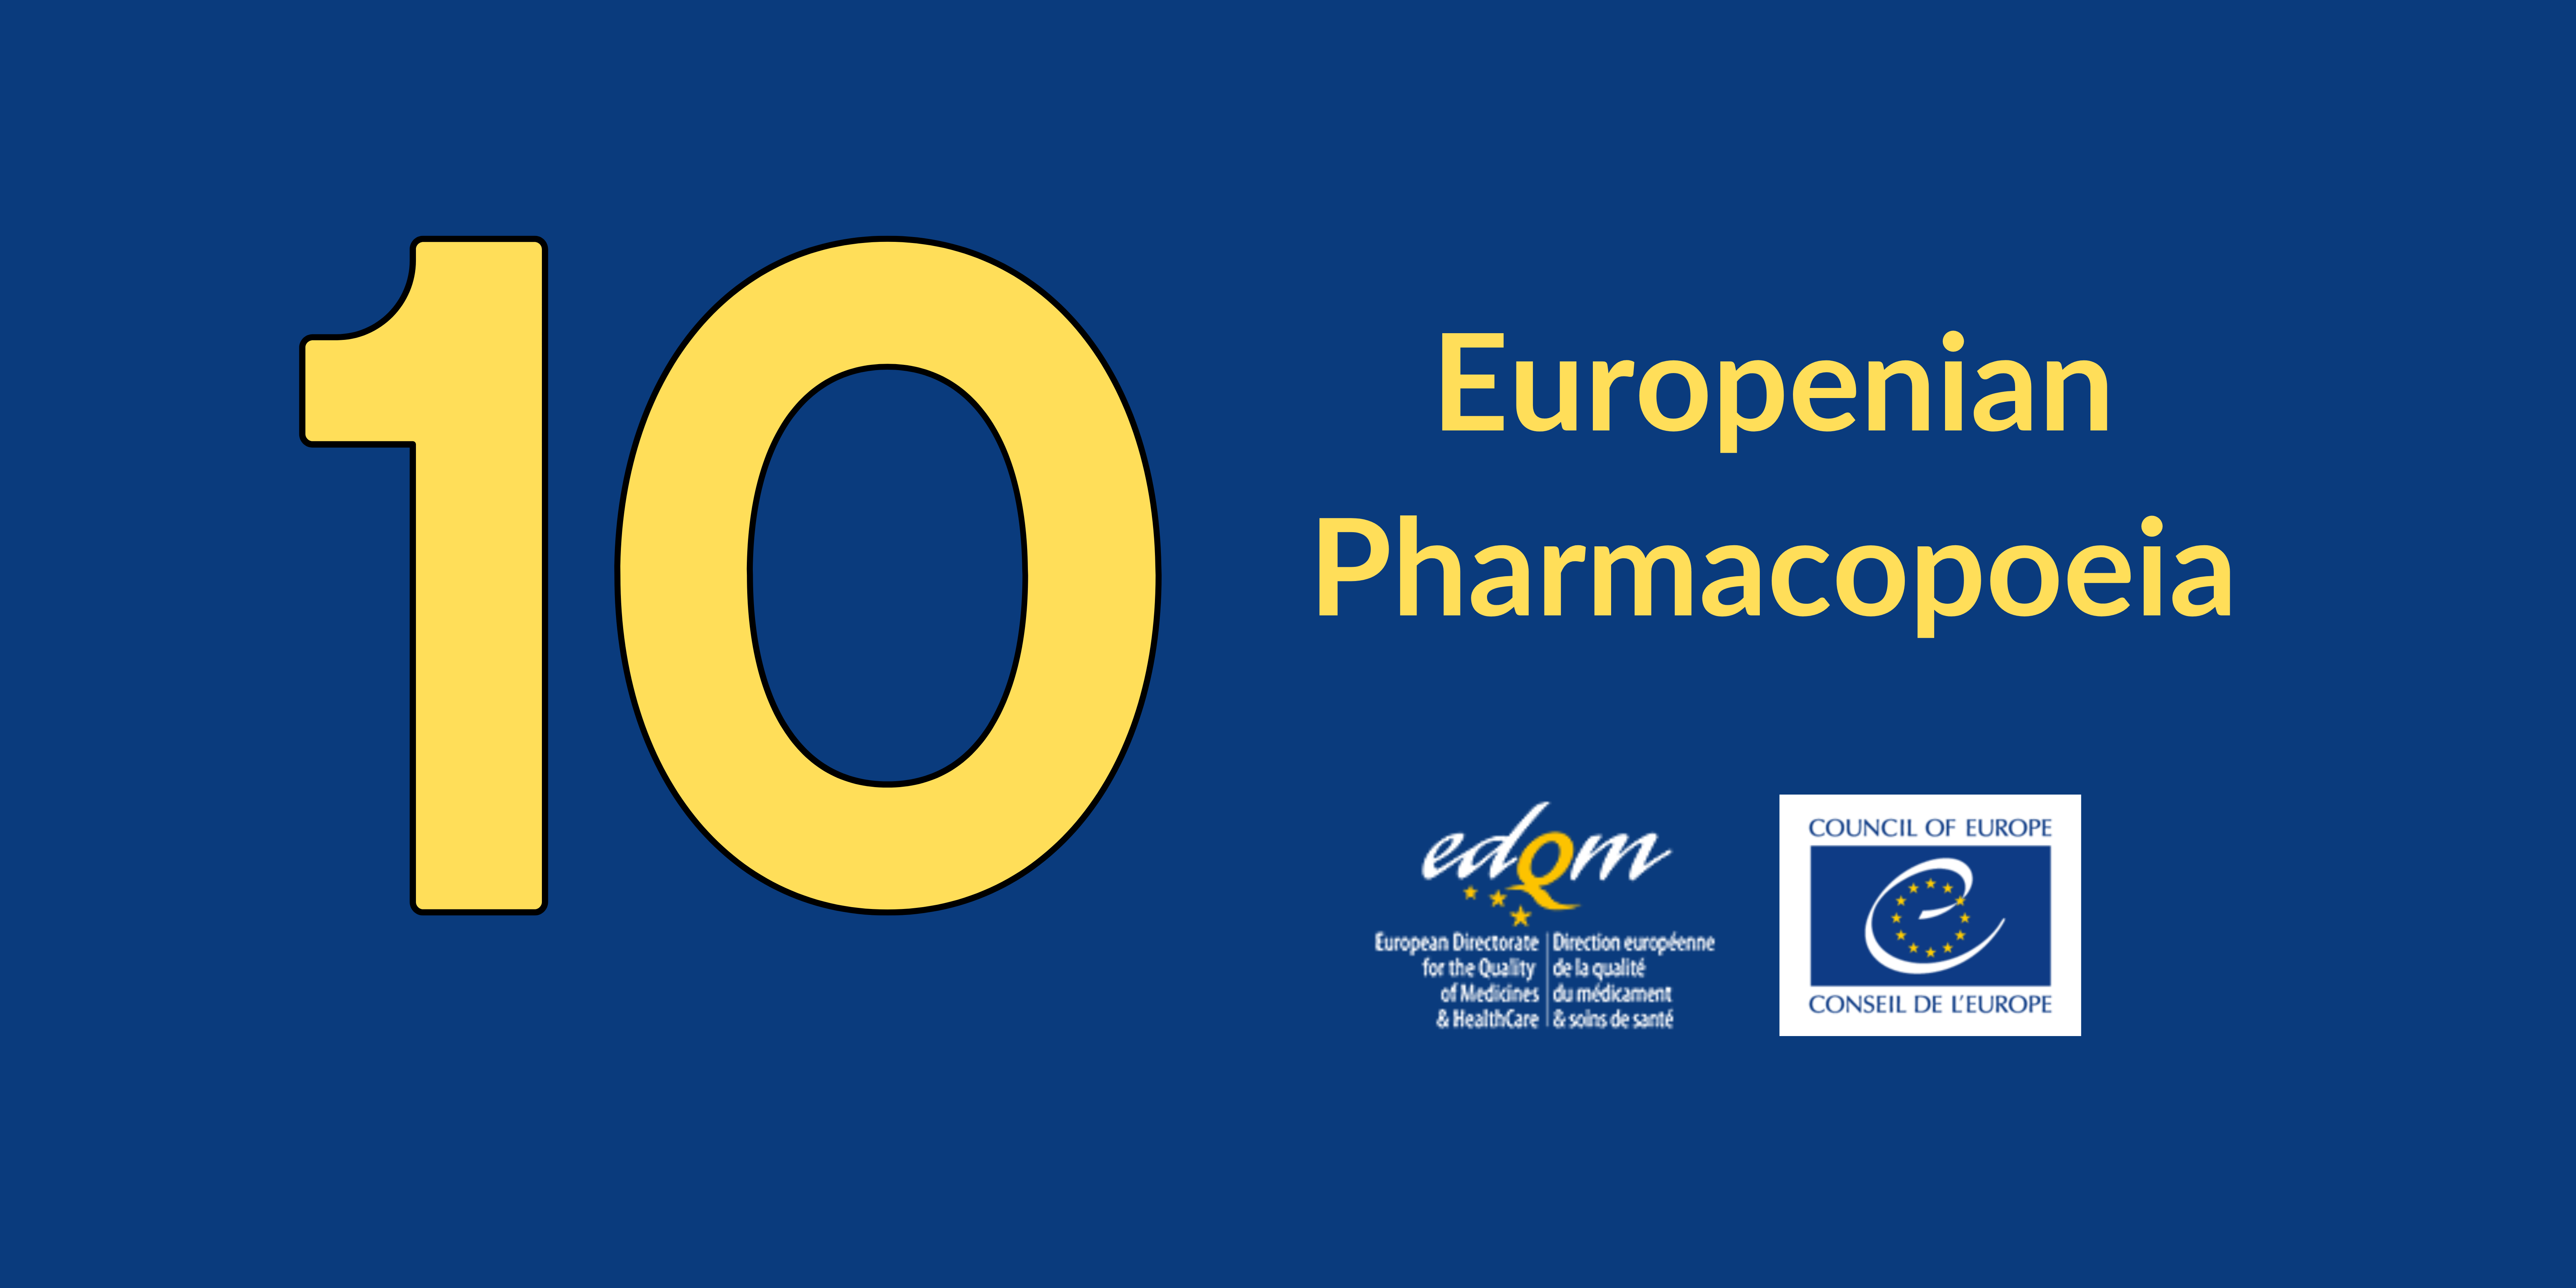 Europenian pharmacopoeia